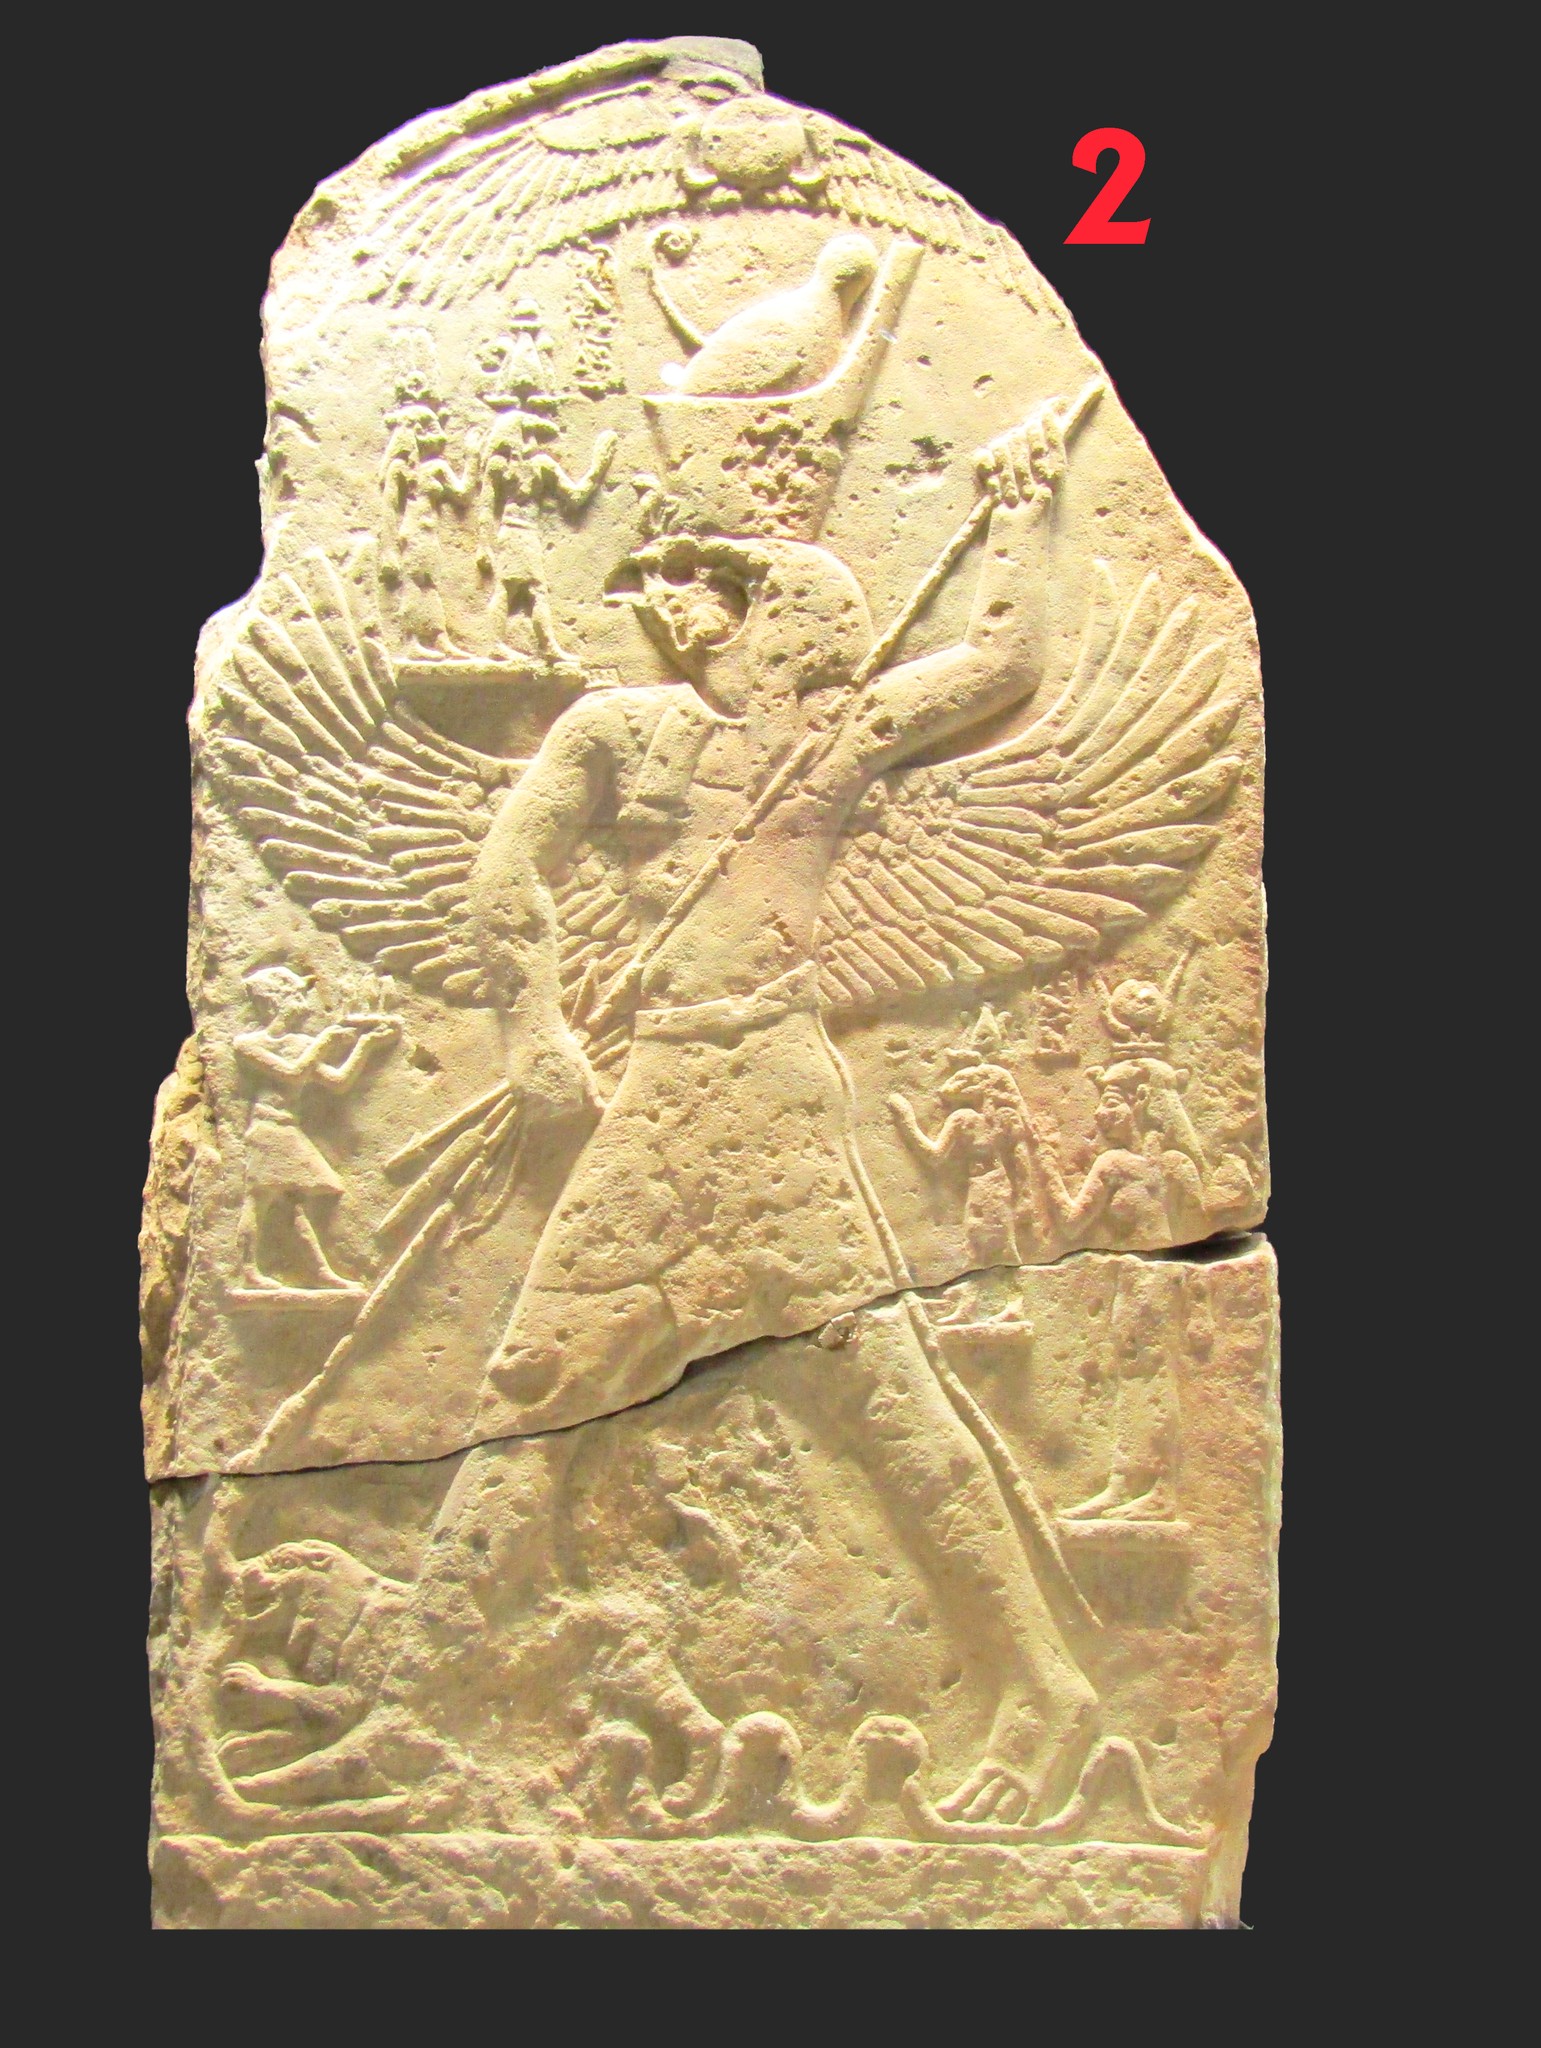 اللوحة الثانية نقش يصور حورس وهو يطعن الثعبان في إشارة للمعبود ست